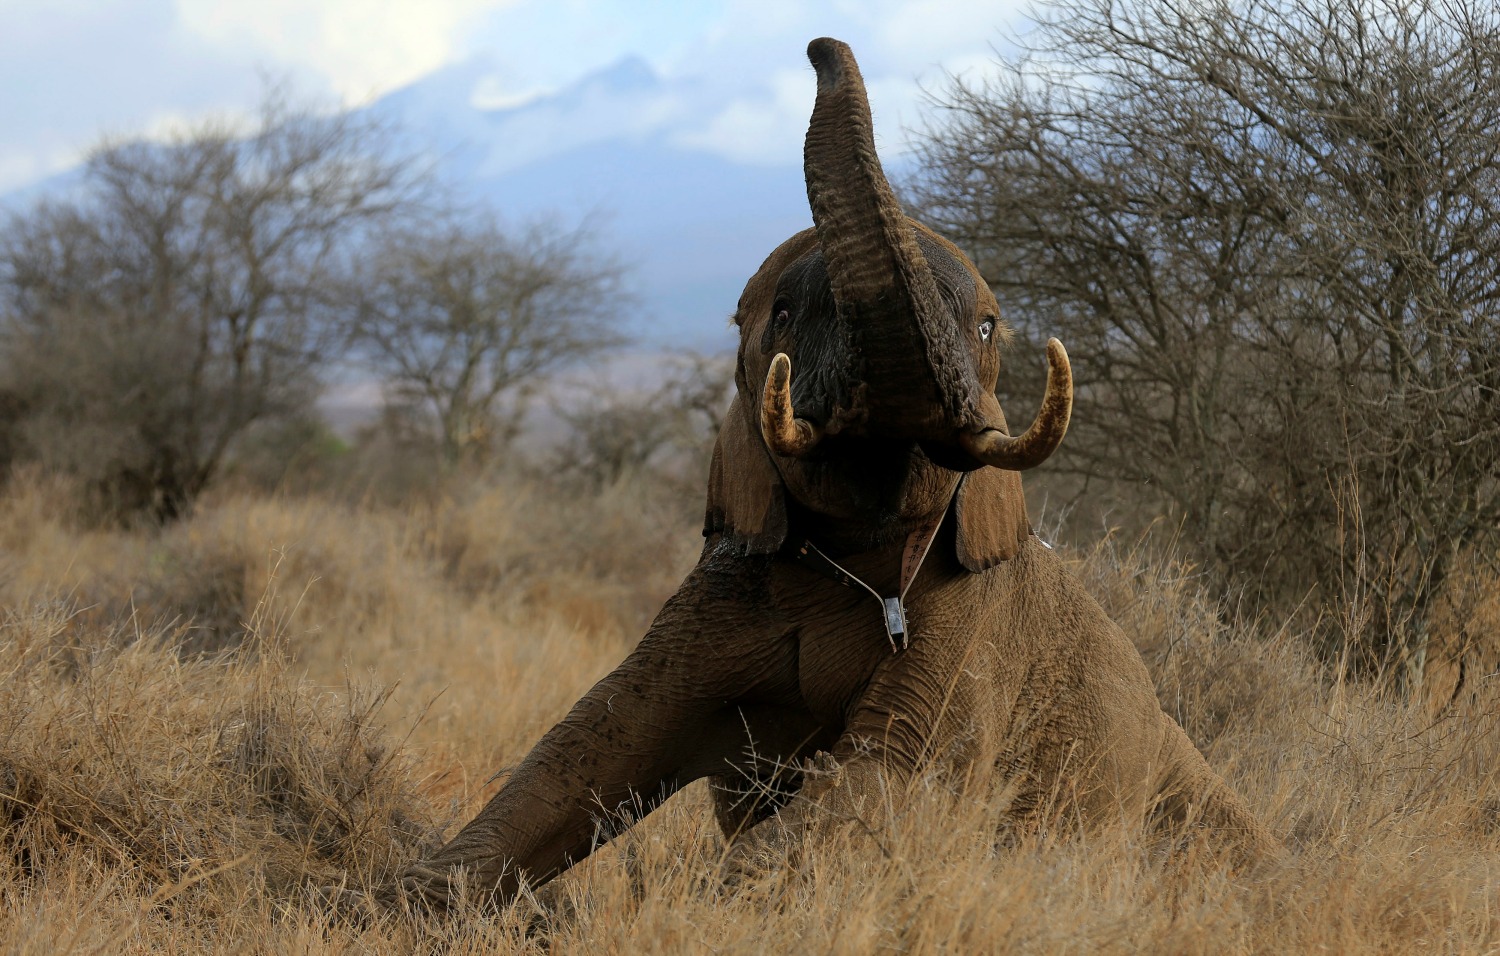 Conservacionistas monitorizan a los elefantes para asegurar los ‘corredores’ en Kenia